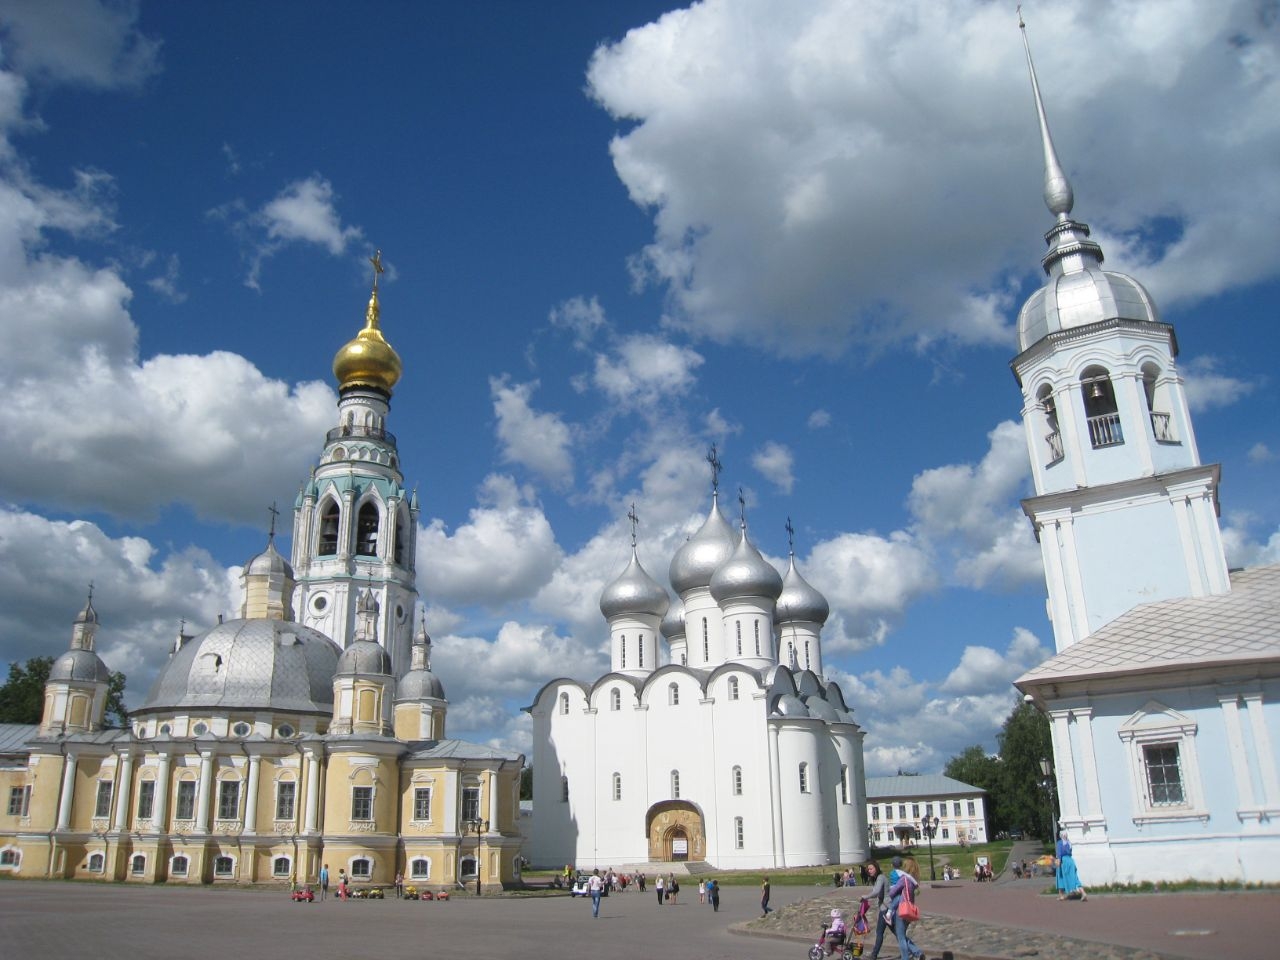 Храм Святого Благоверного князя Александра Невског / The Church of the Holy Prince Alexander Nevsky